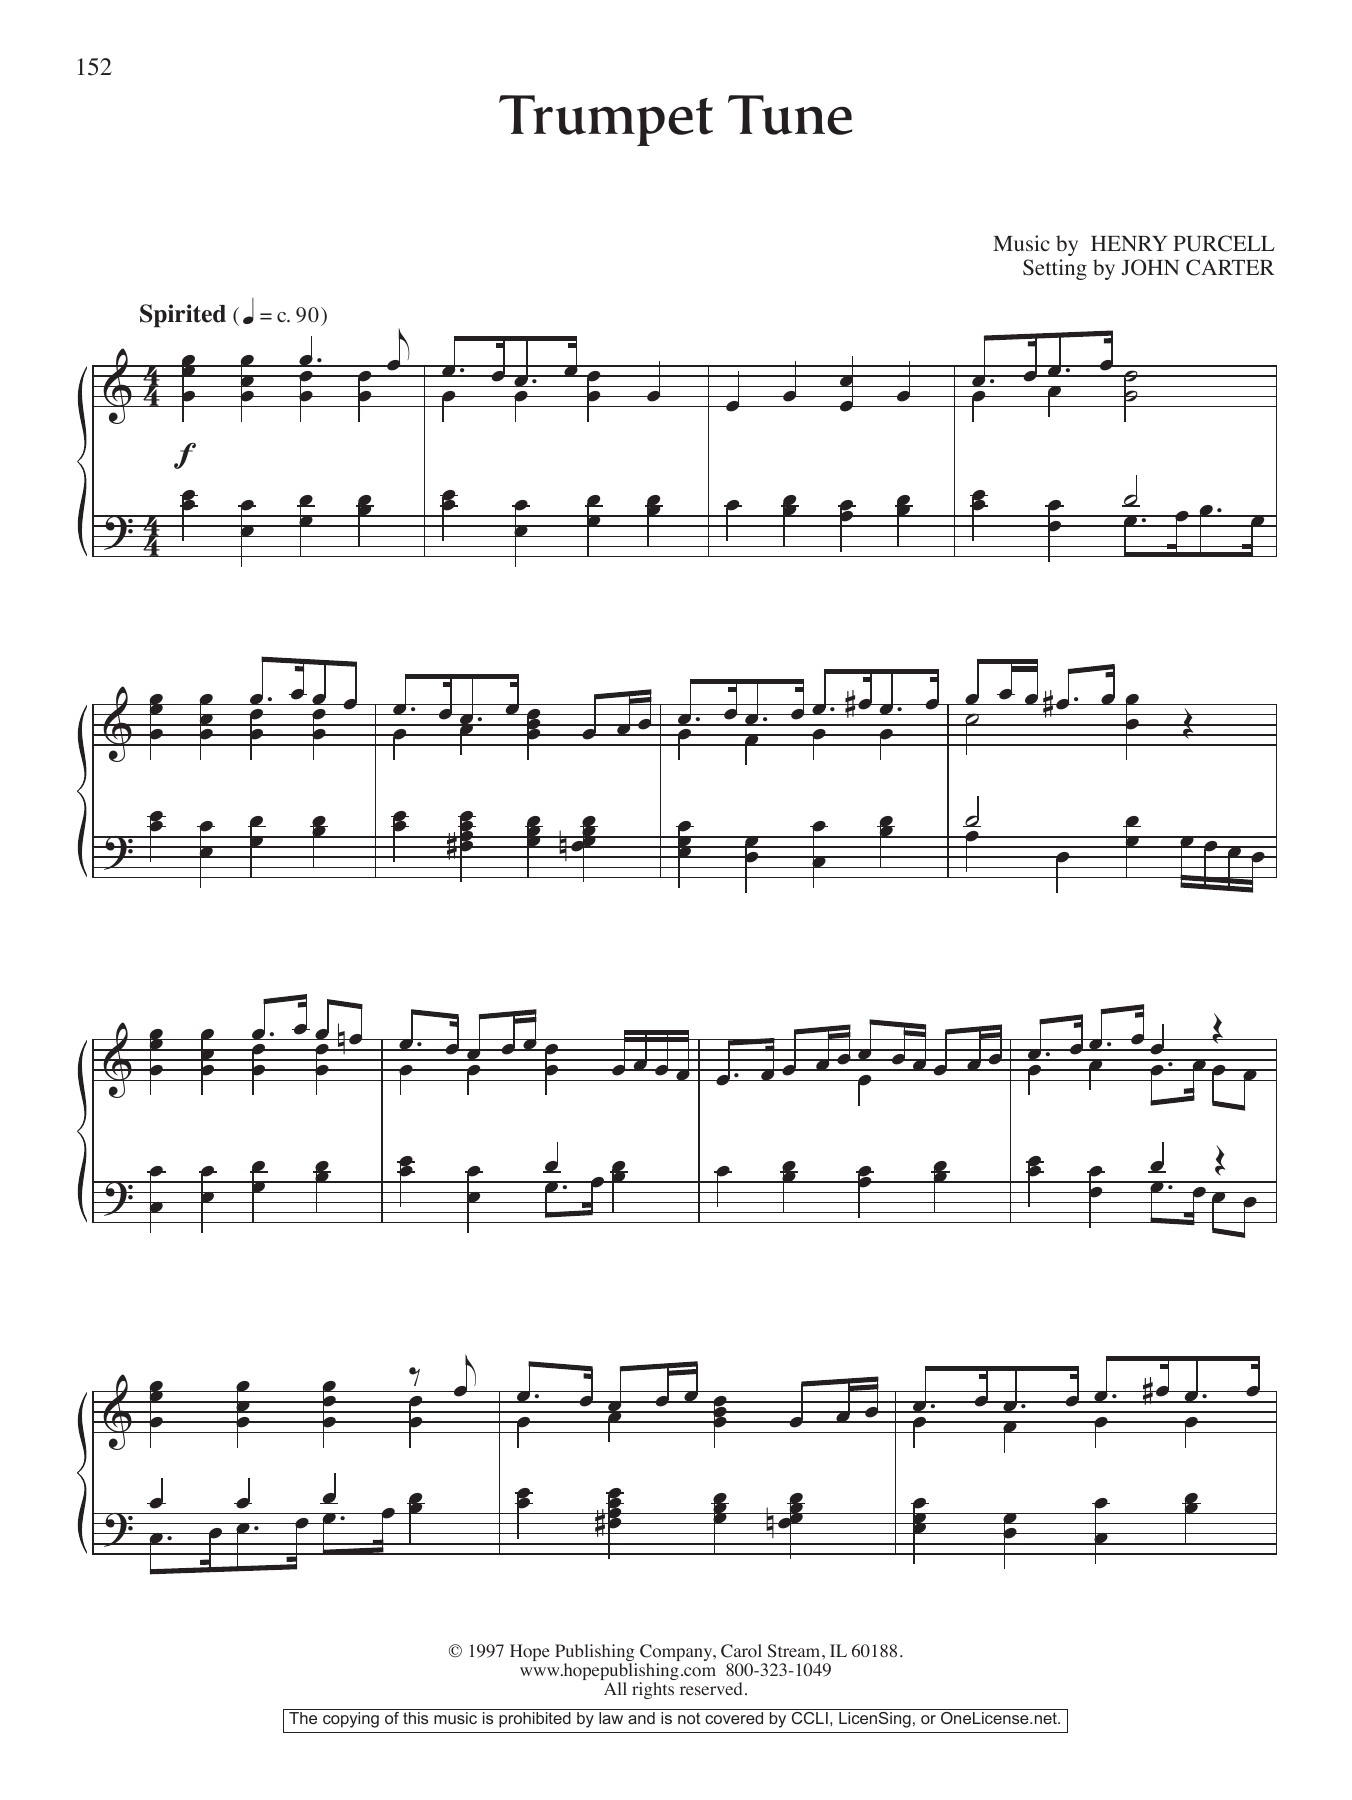 Download John Carter Trumpet Tune Sheet Music